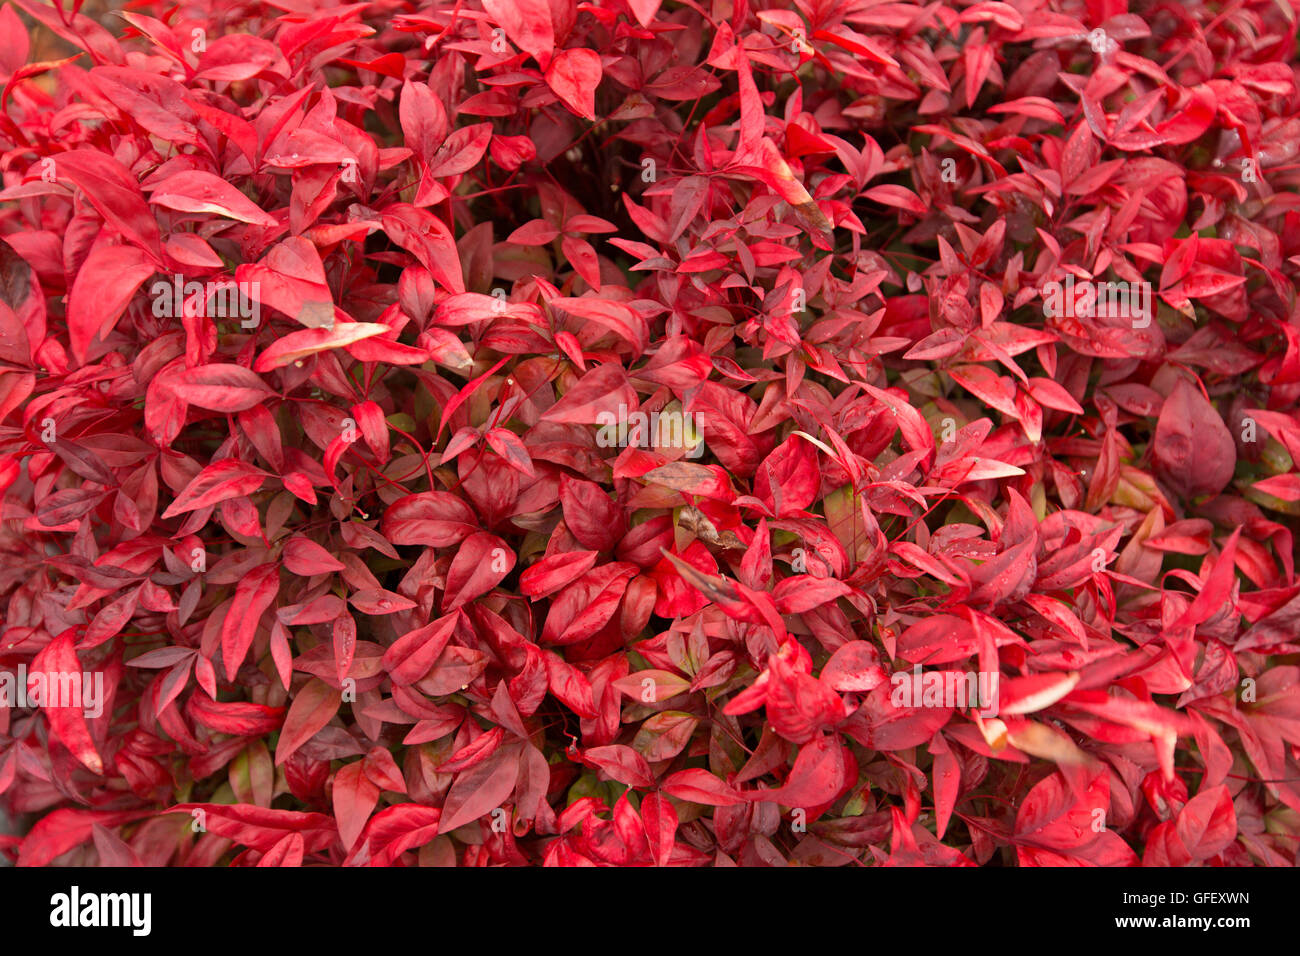 Masse des spektakulären lebhafte rote Blätter von Nandina Domestica, niedrig wachsenden Garten Strauch bekannt als Heiliger Bambus. Stockfoto